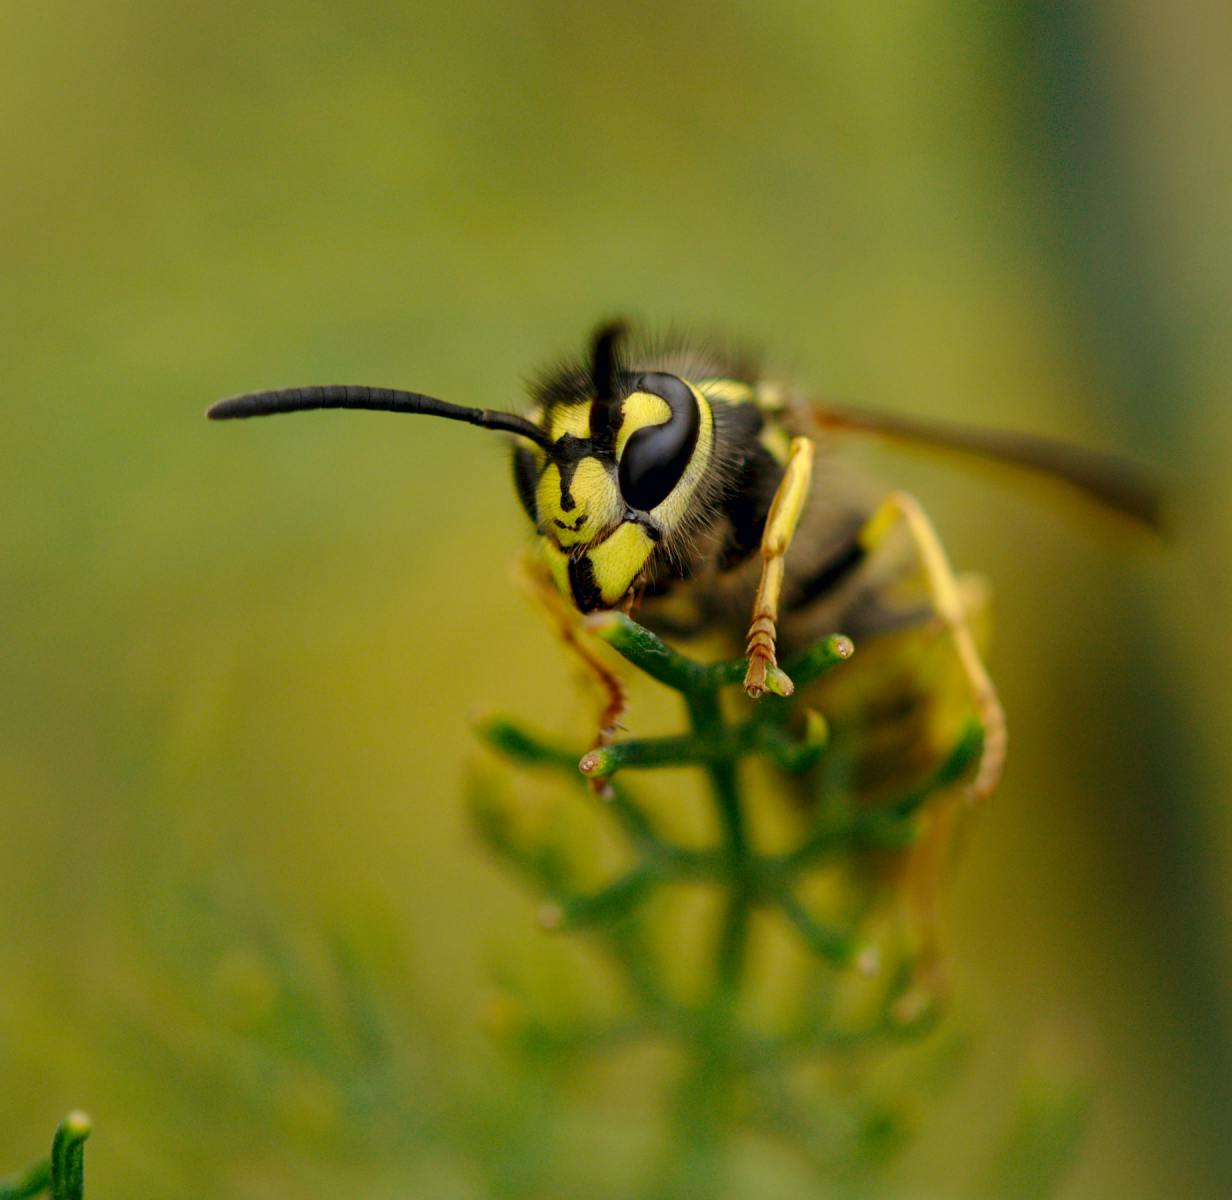 Wasp